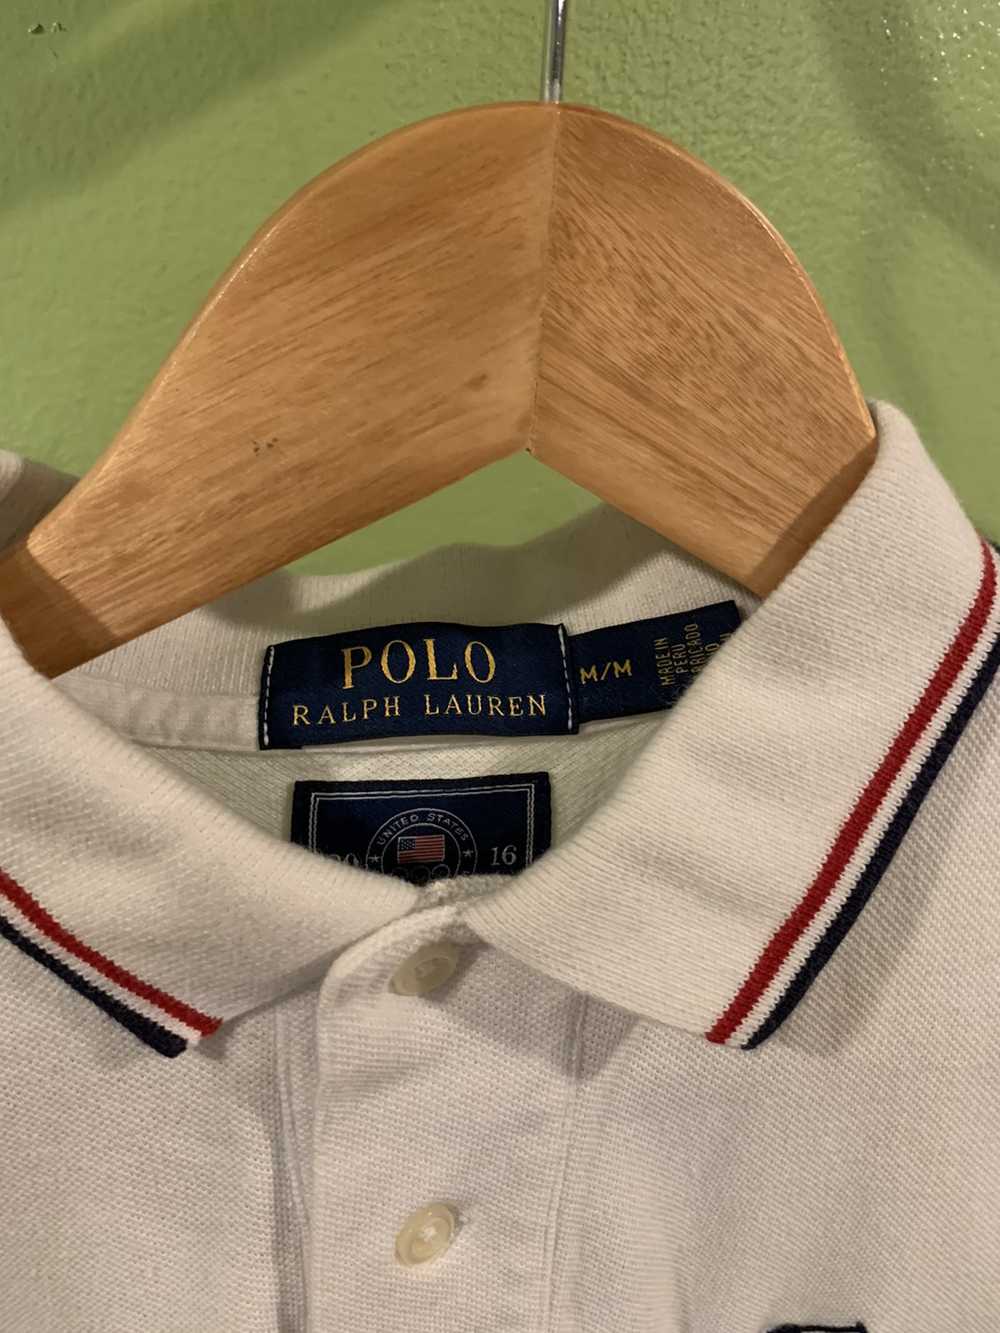 Polo Ralph Lauren Polo Ralph Lauren USA 2016 Polo… - image 4